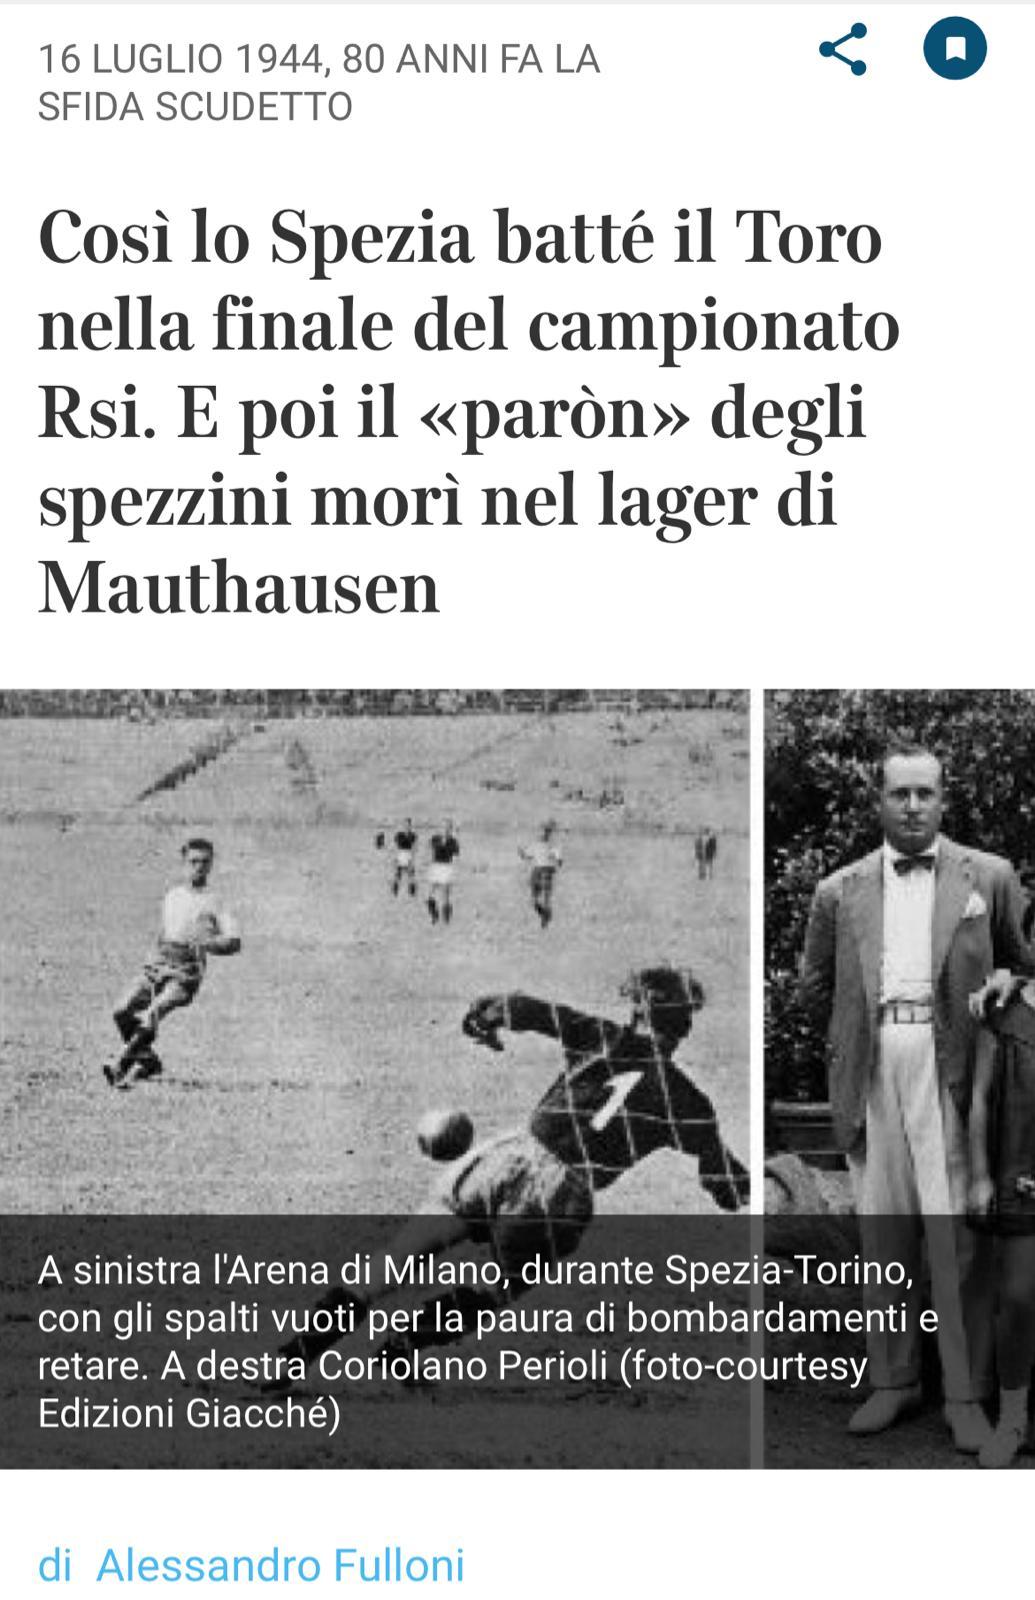 A 80 anni dallo Scudetto dello Spezia. Così lo Spezia batté il Toro nella finale